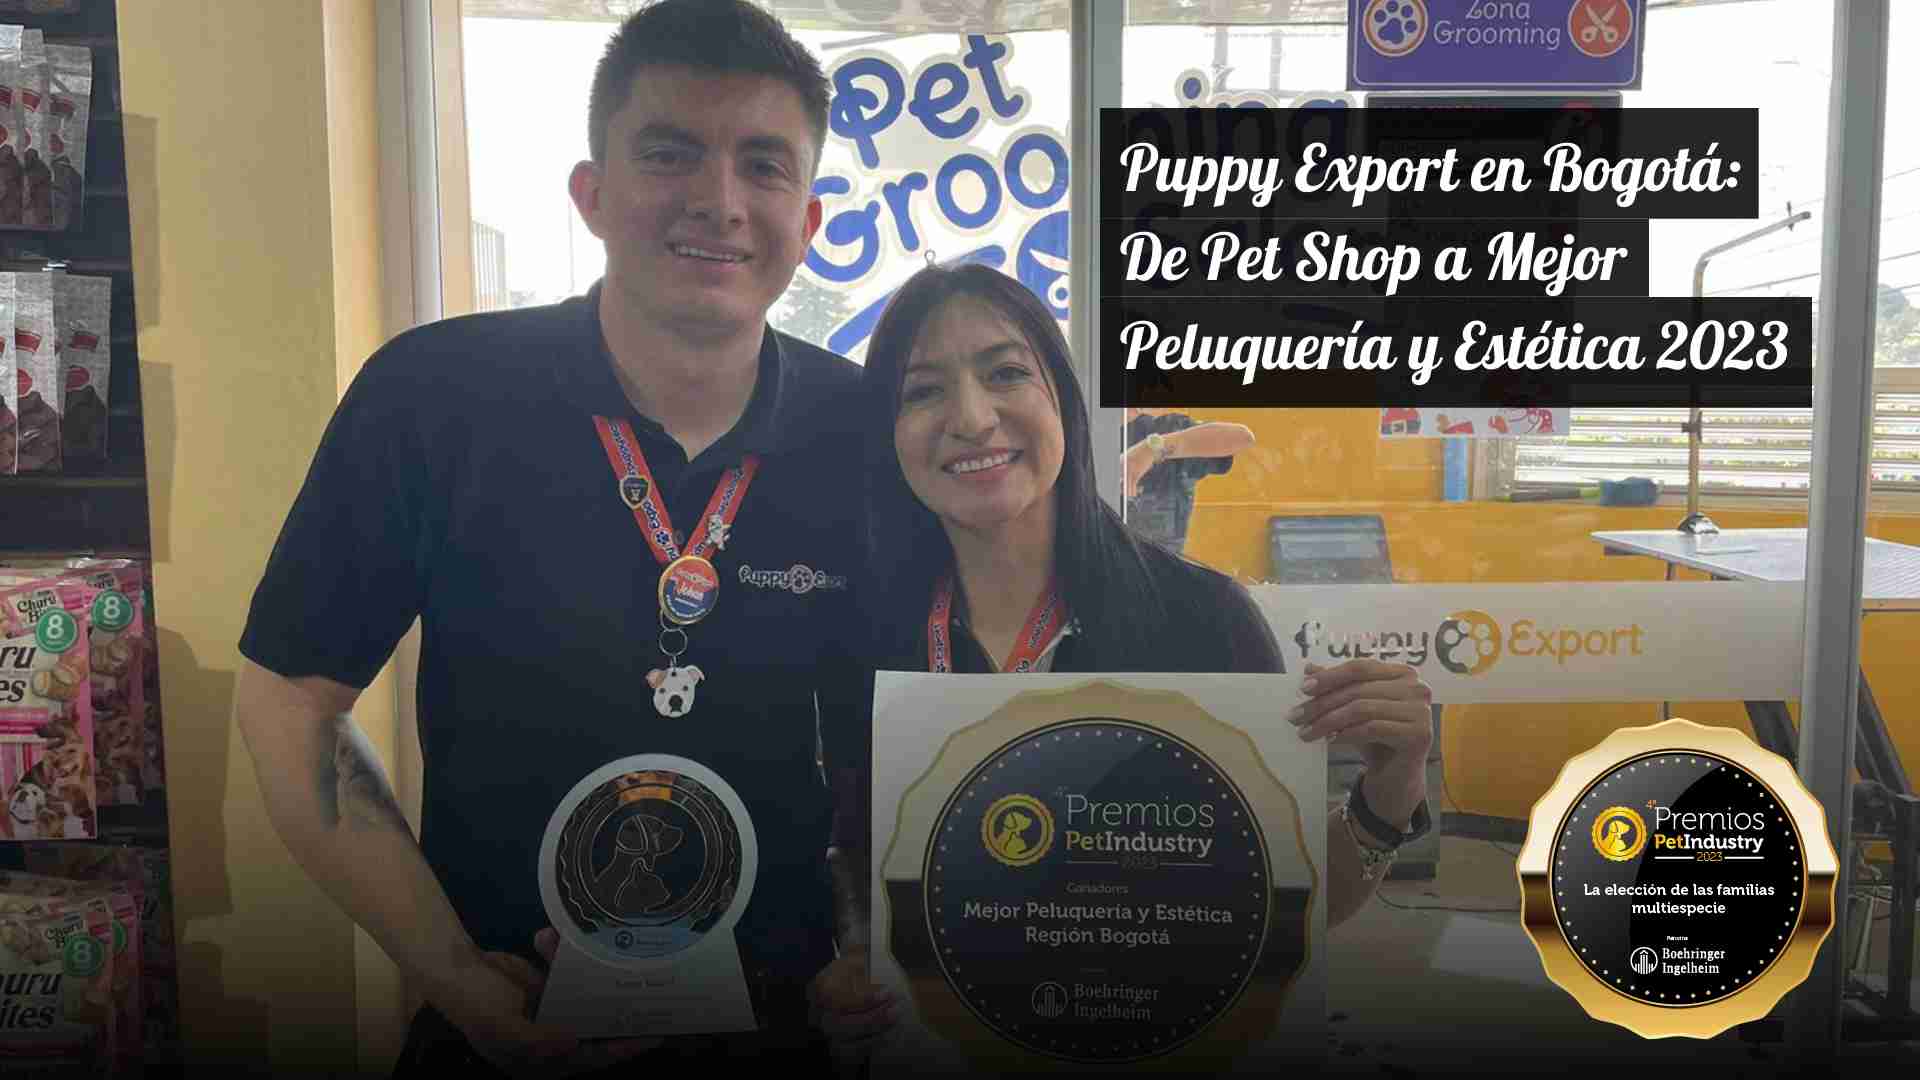 Puppy Export en Bogotá: De Pet Shop a Mejor Peluquería y Estética 2023